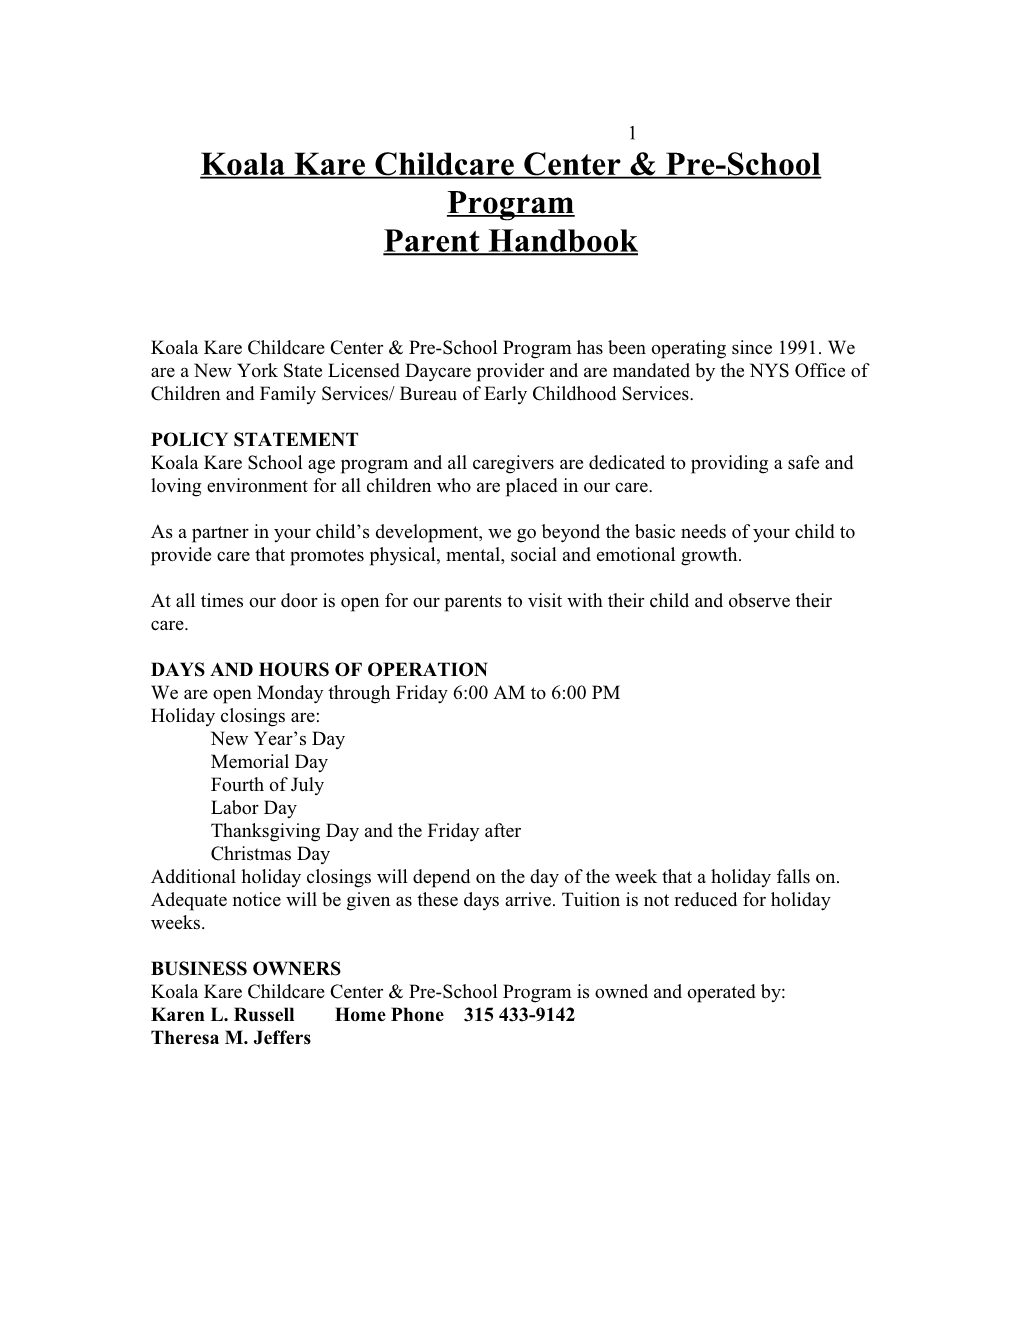 Koala Kare Childcare Center & Pre-School Program